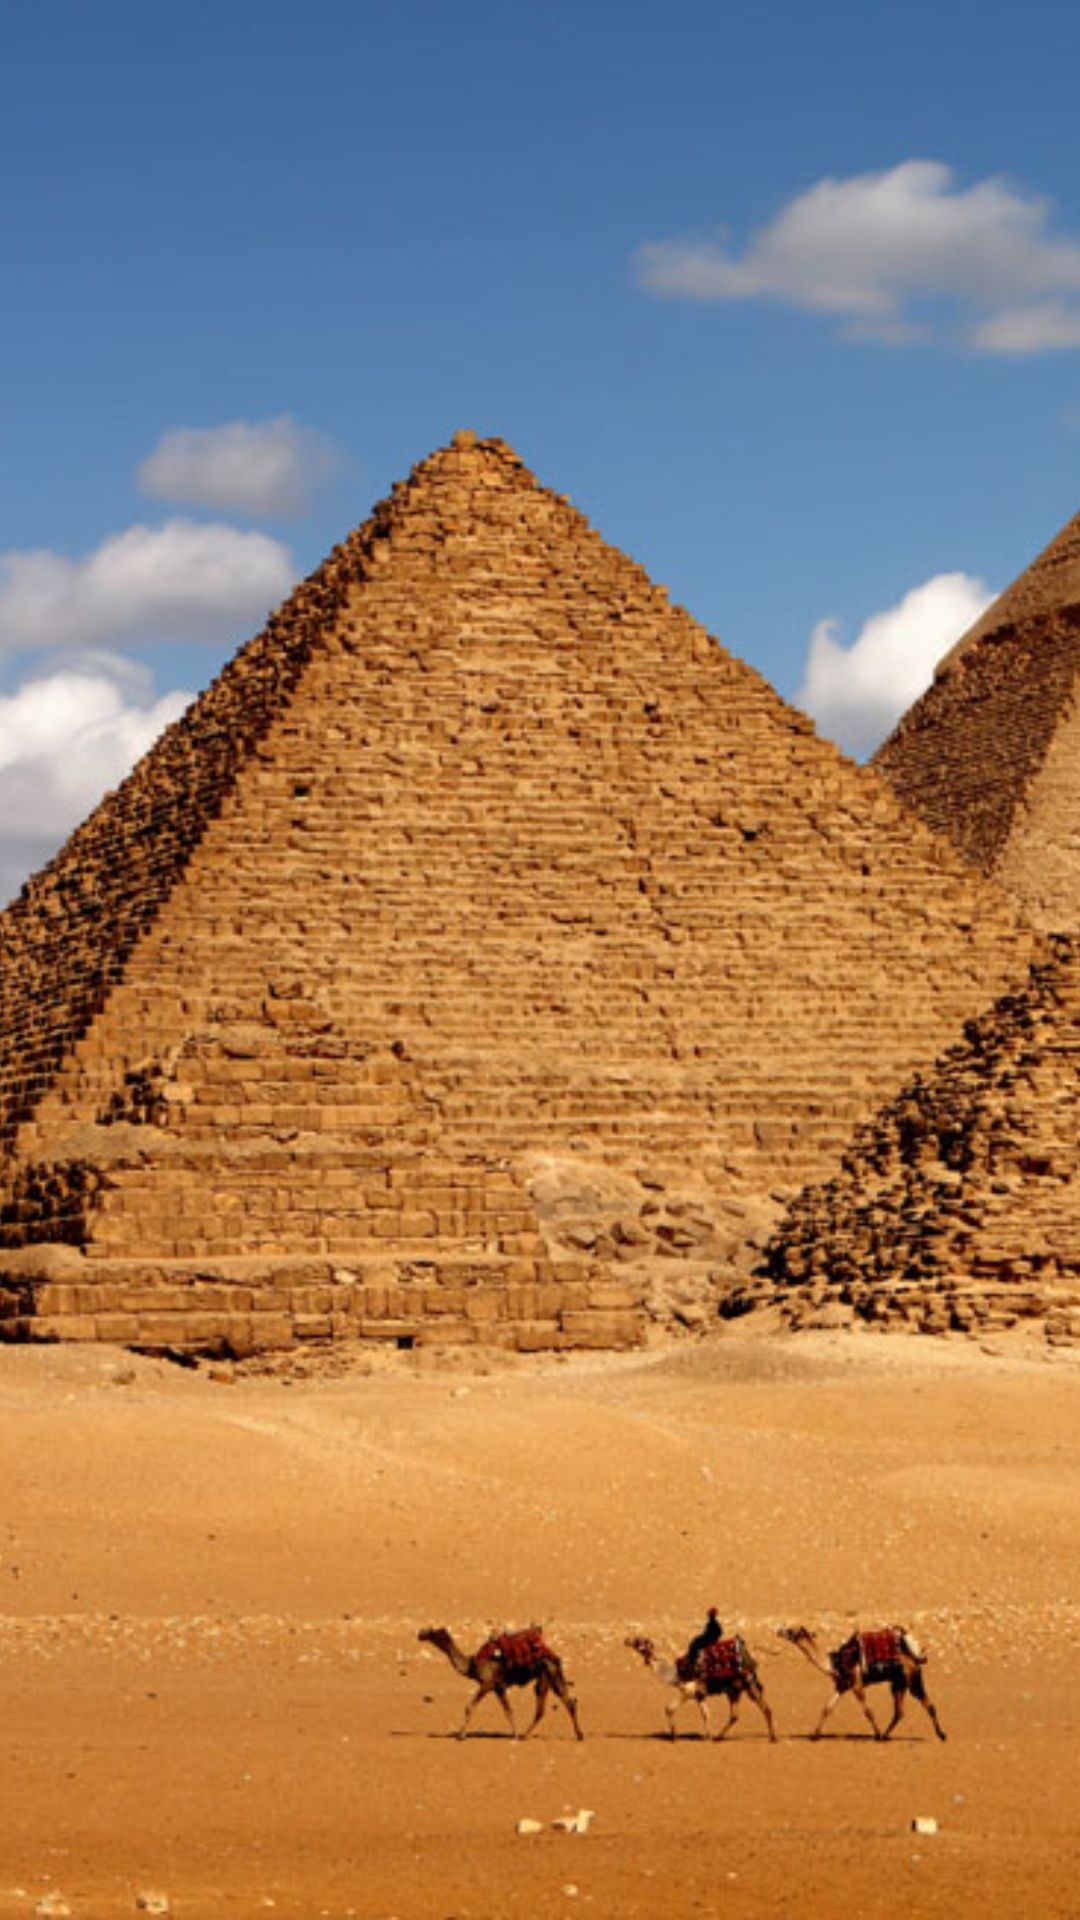 Pyramid wonder, Ancient treasures, Cairo's splendor, Egyptian history, 1080x1920 Full HD Handy